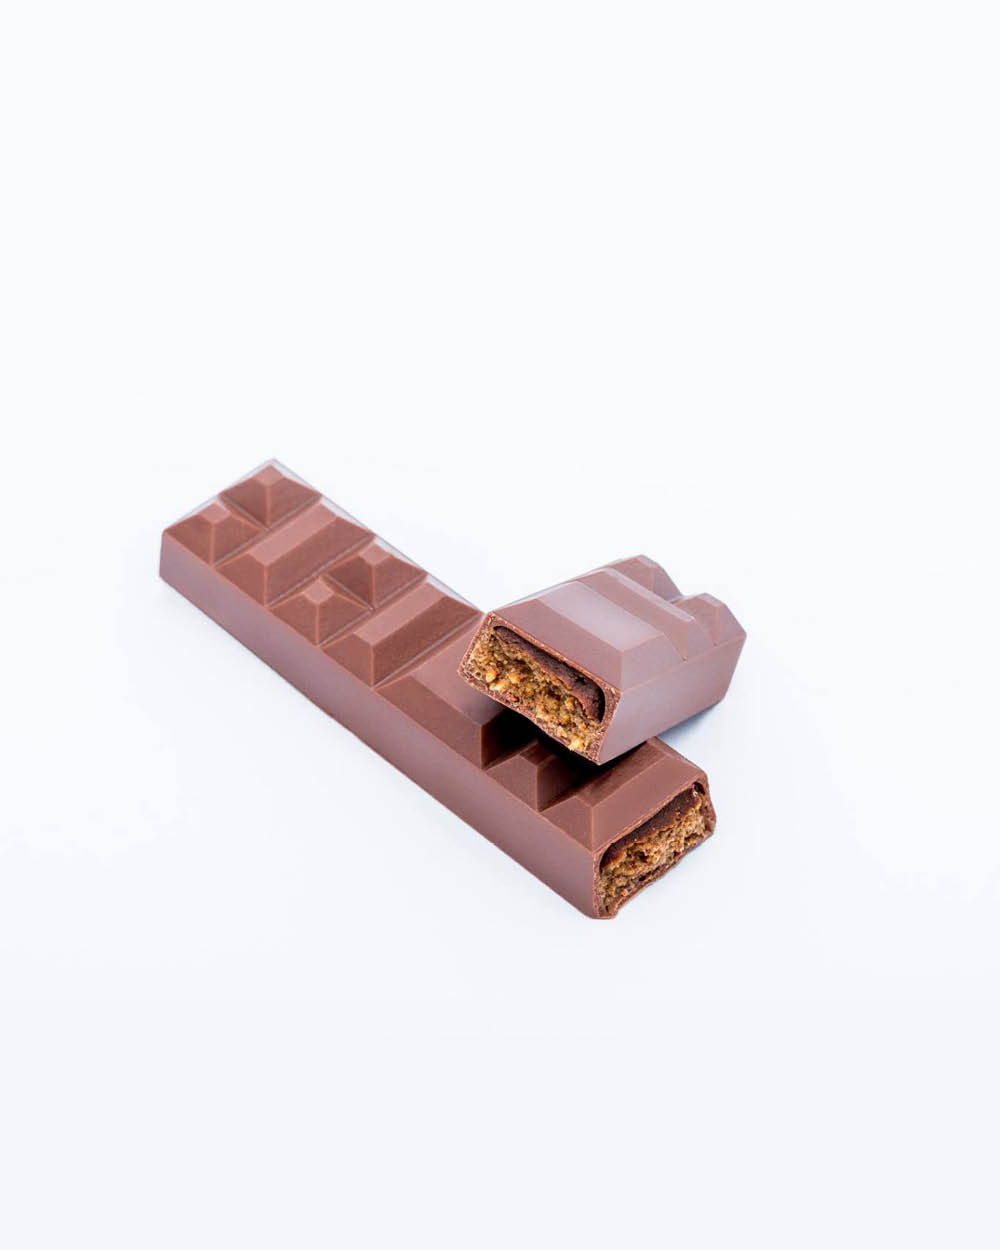 La Chocolat Alain Ducasse: lar dos maiores especialistas franceses em chocolate